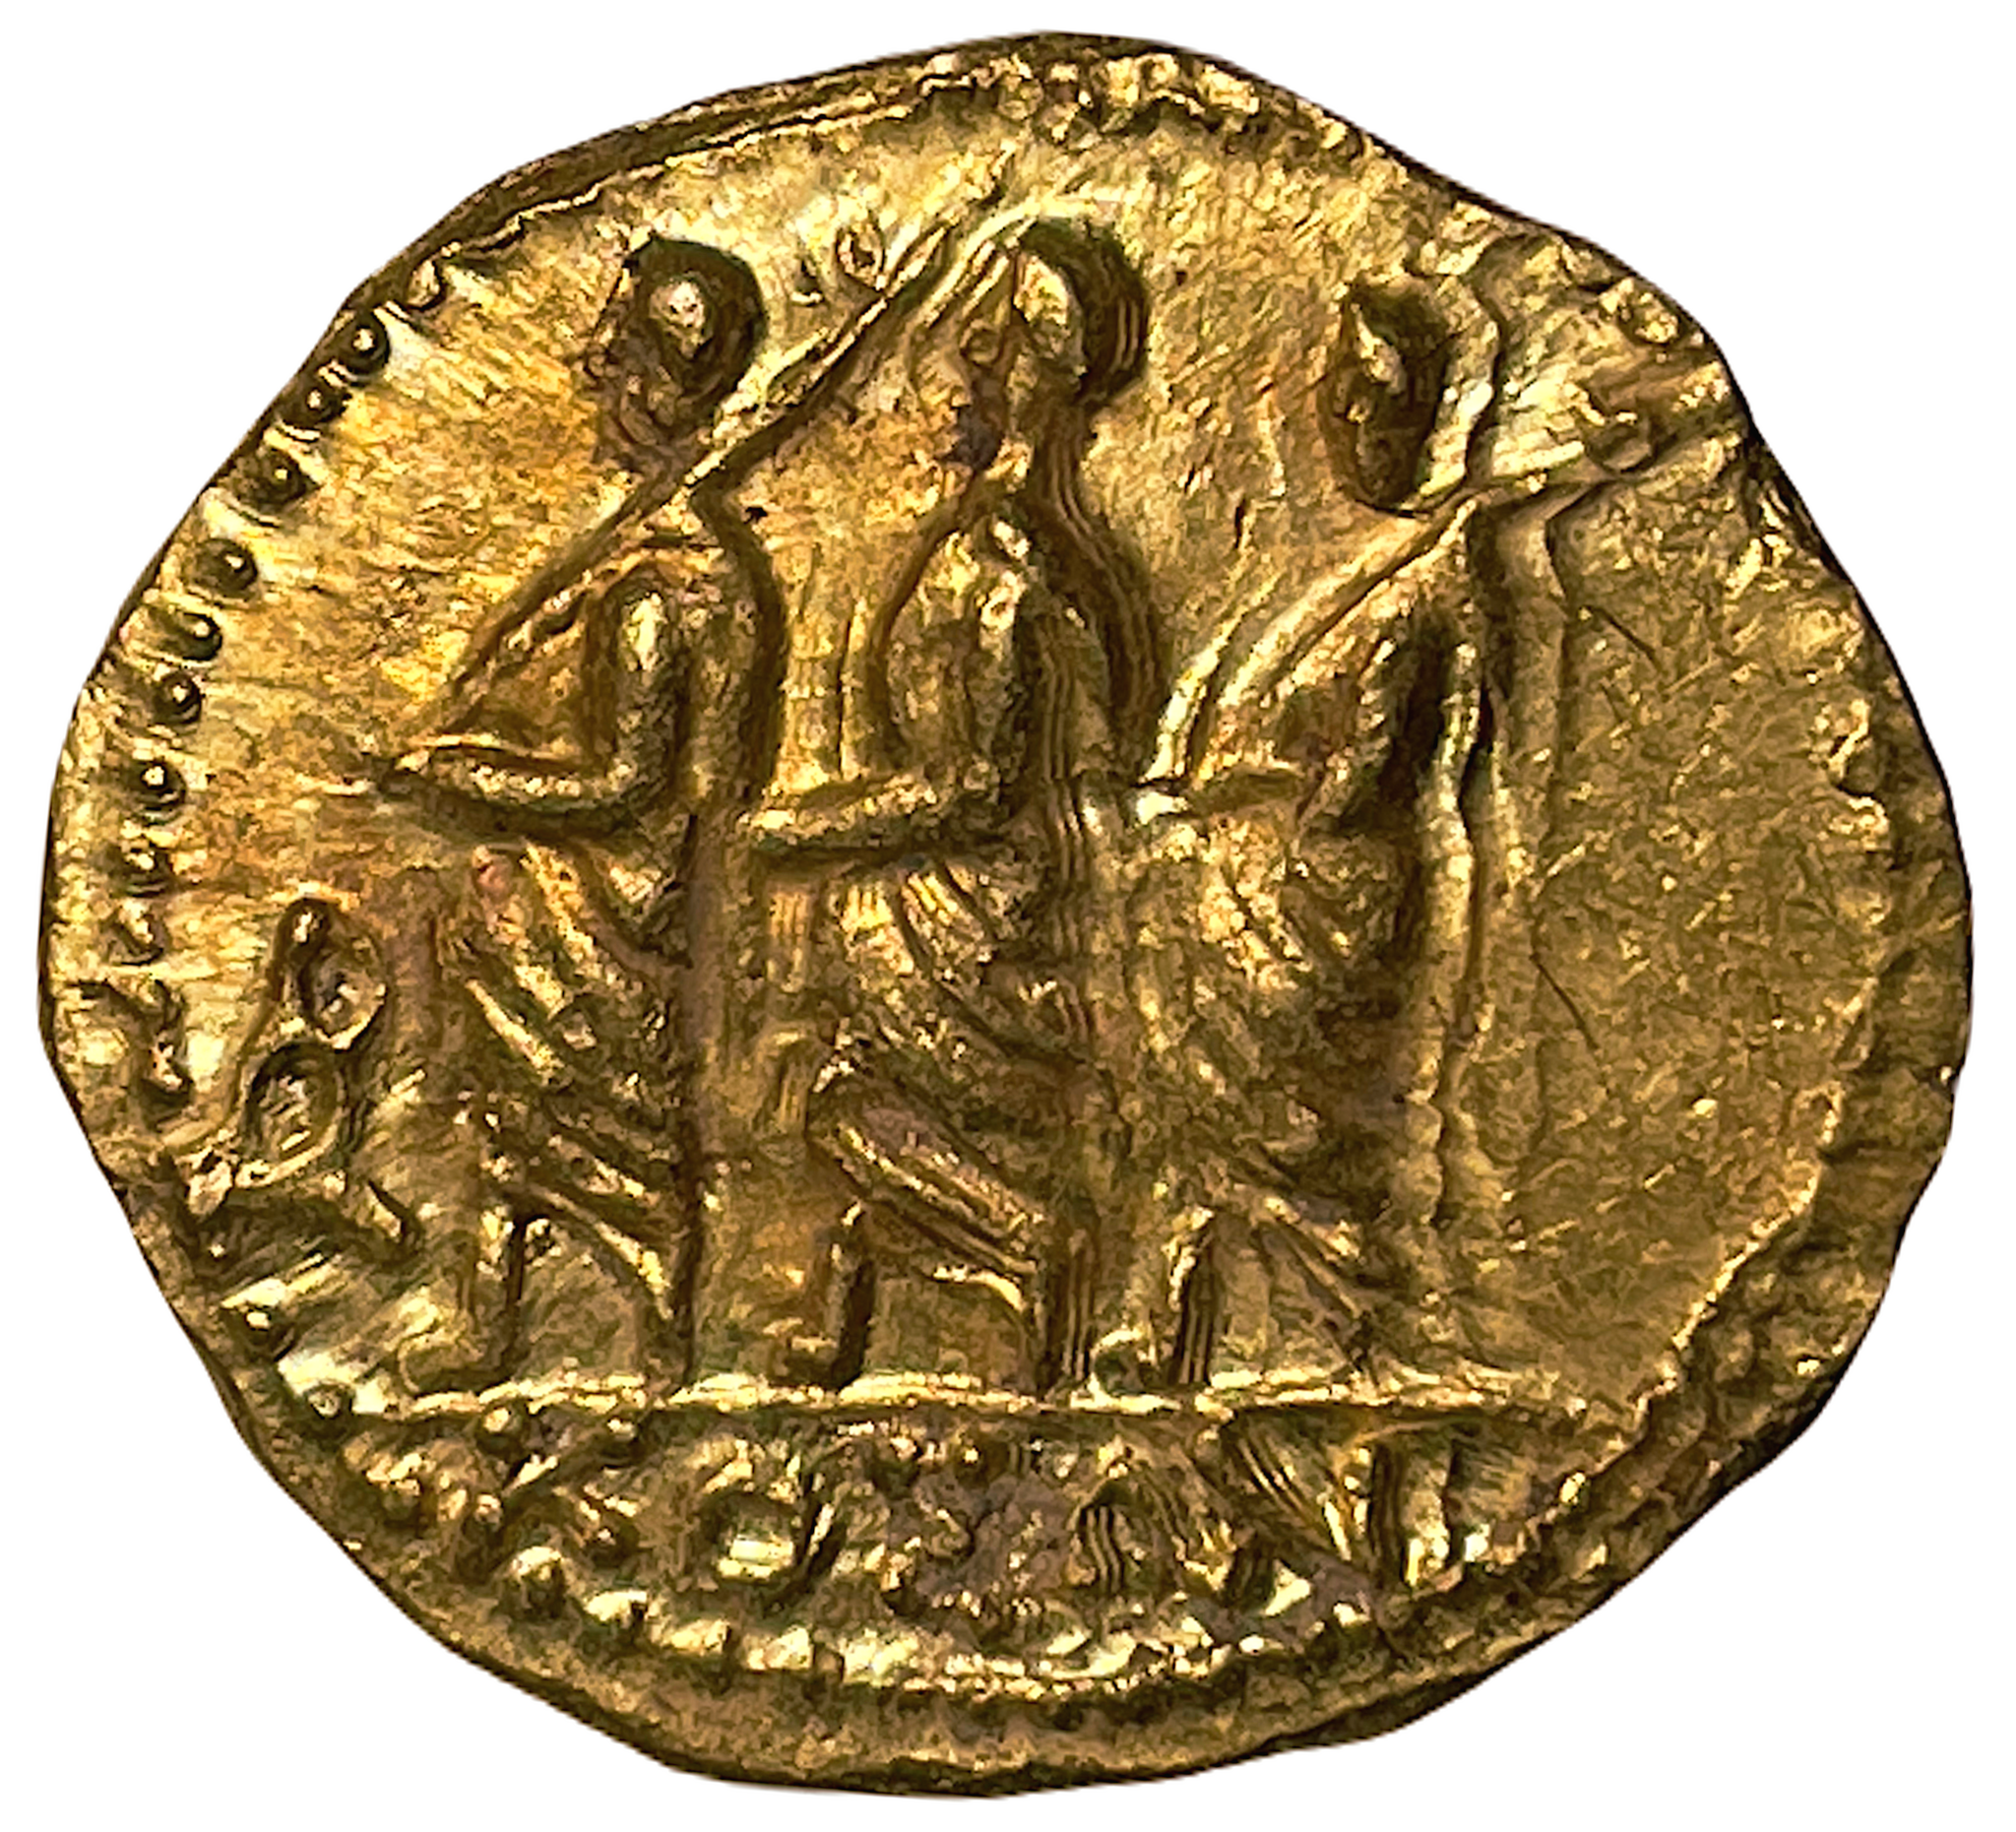 Romerska republiken, Markus Junius Brutus Guldstater ca 43-42 f.Kr - Vackert exemplar med lyster